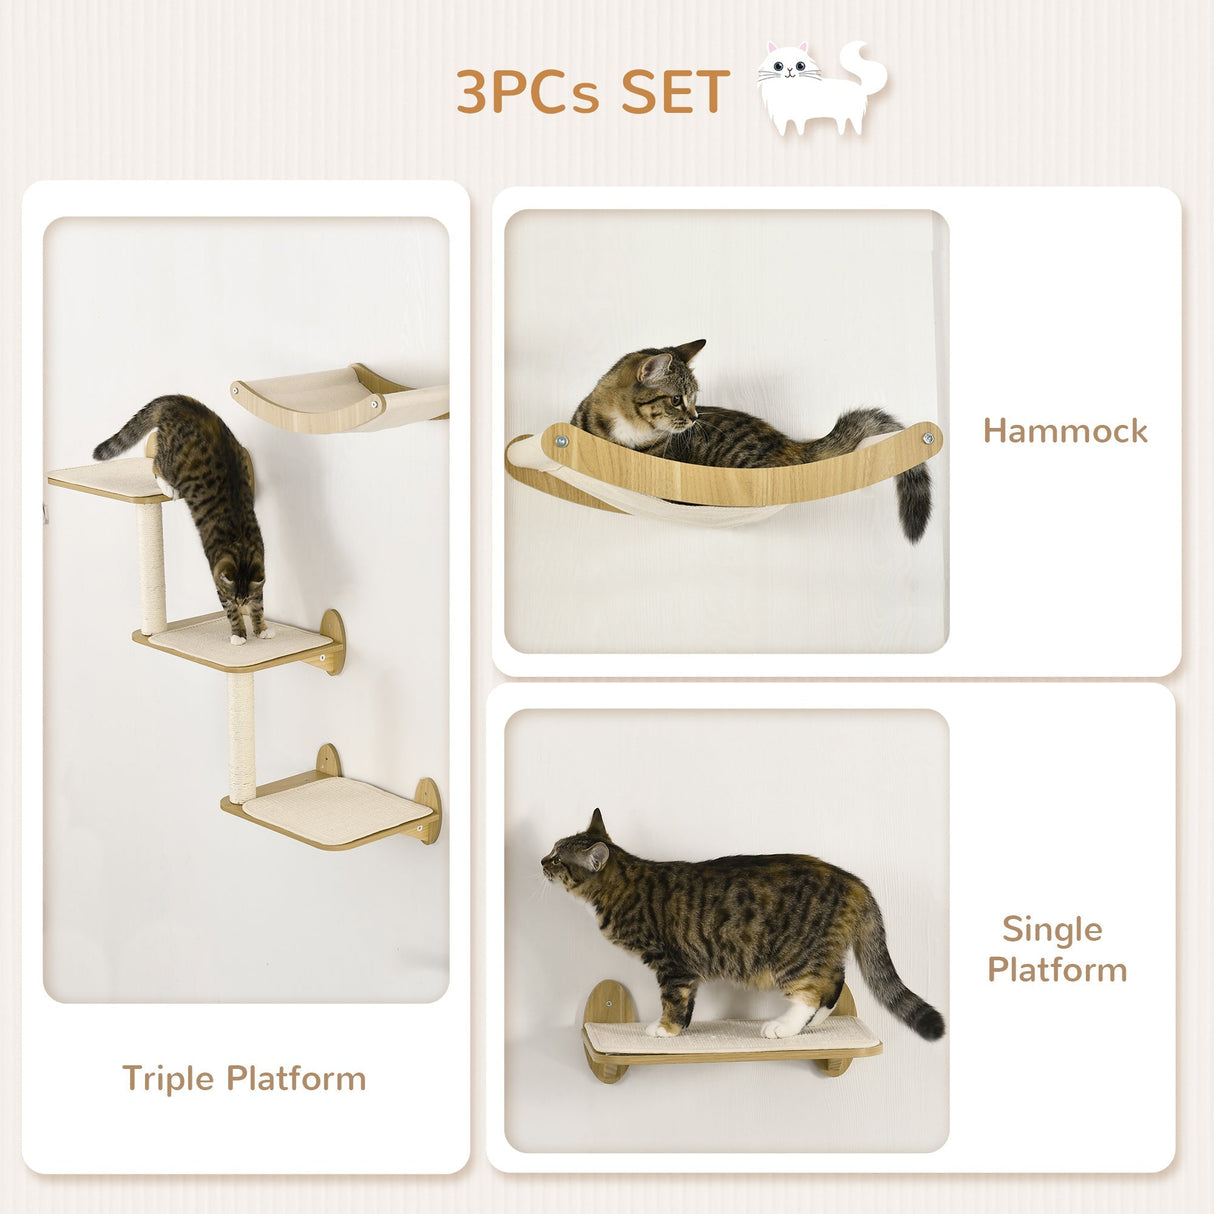 3PCs Wall Mounted Cats Shelves, Cat Climbing Shelf Set, Kitten Activity Center with Jumping Platforms Hammock Scratching Post, Oak, PawHut,